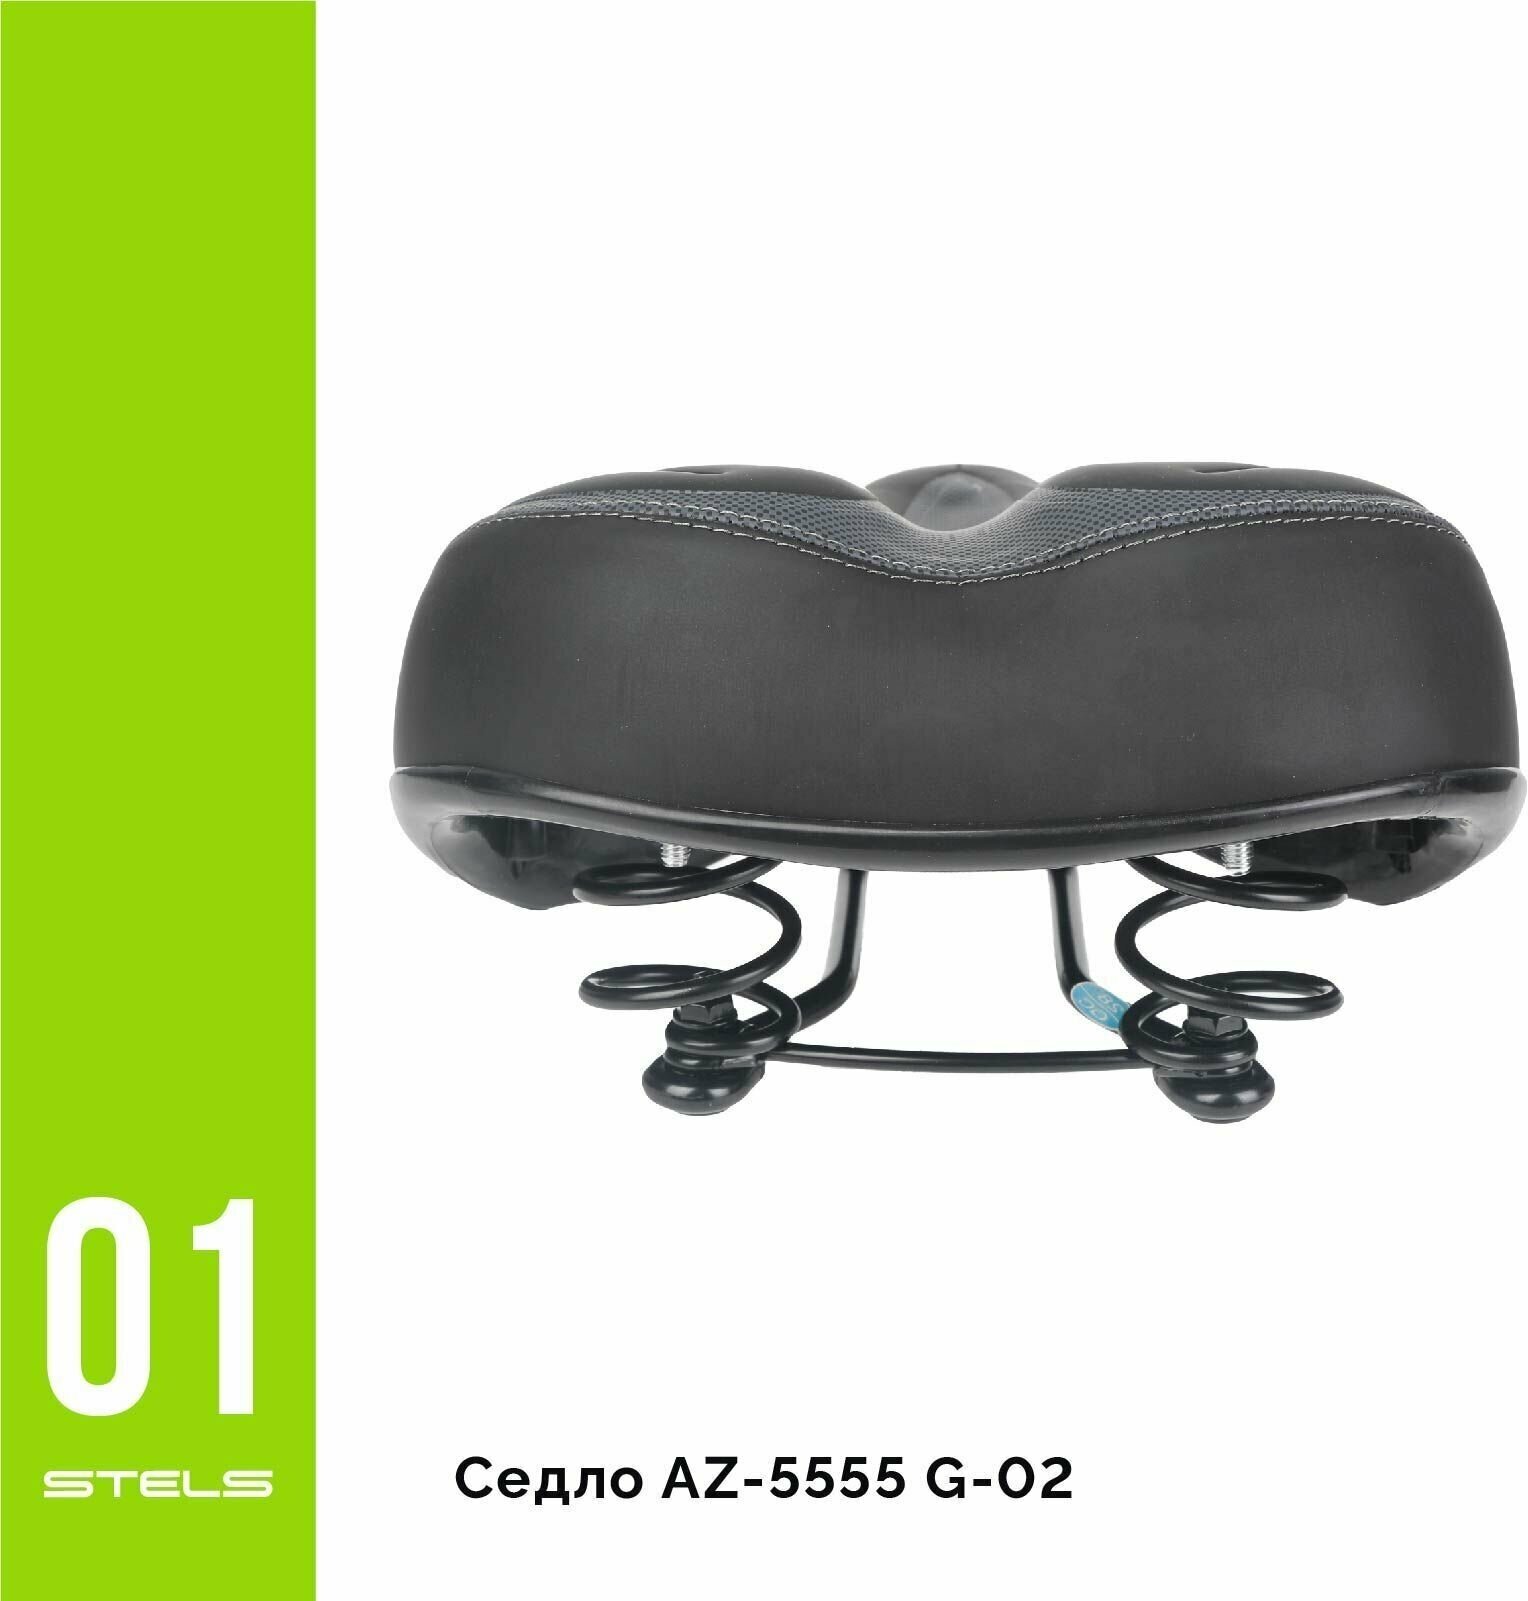 Седло В ассортименте, AZ-5555 G-02 велосипедное мягкое, широкое сиденье на велосипед HIT+